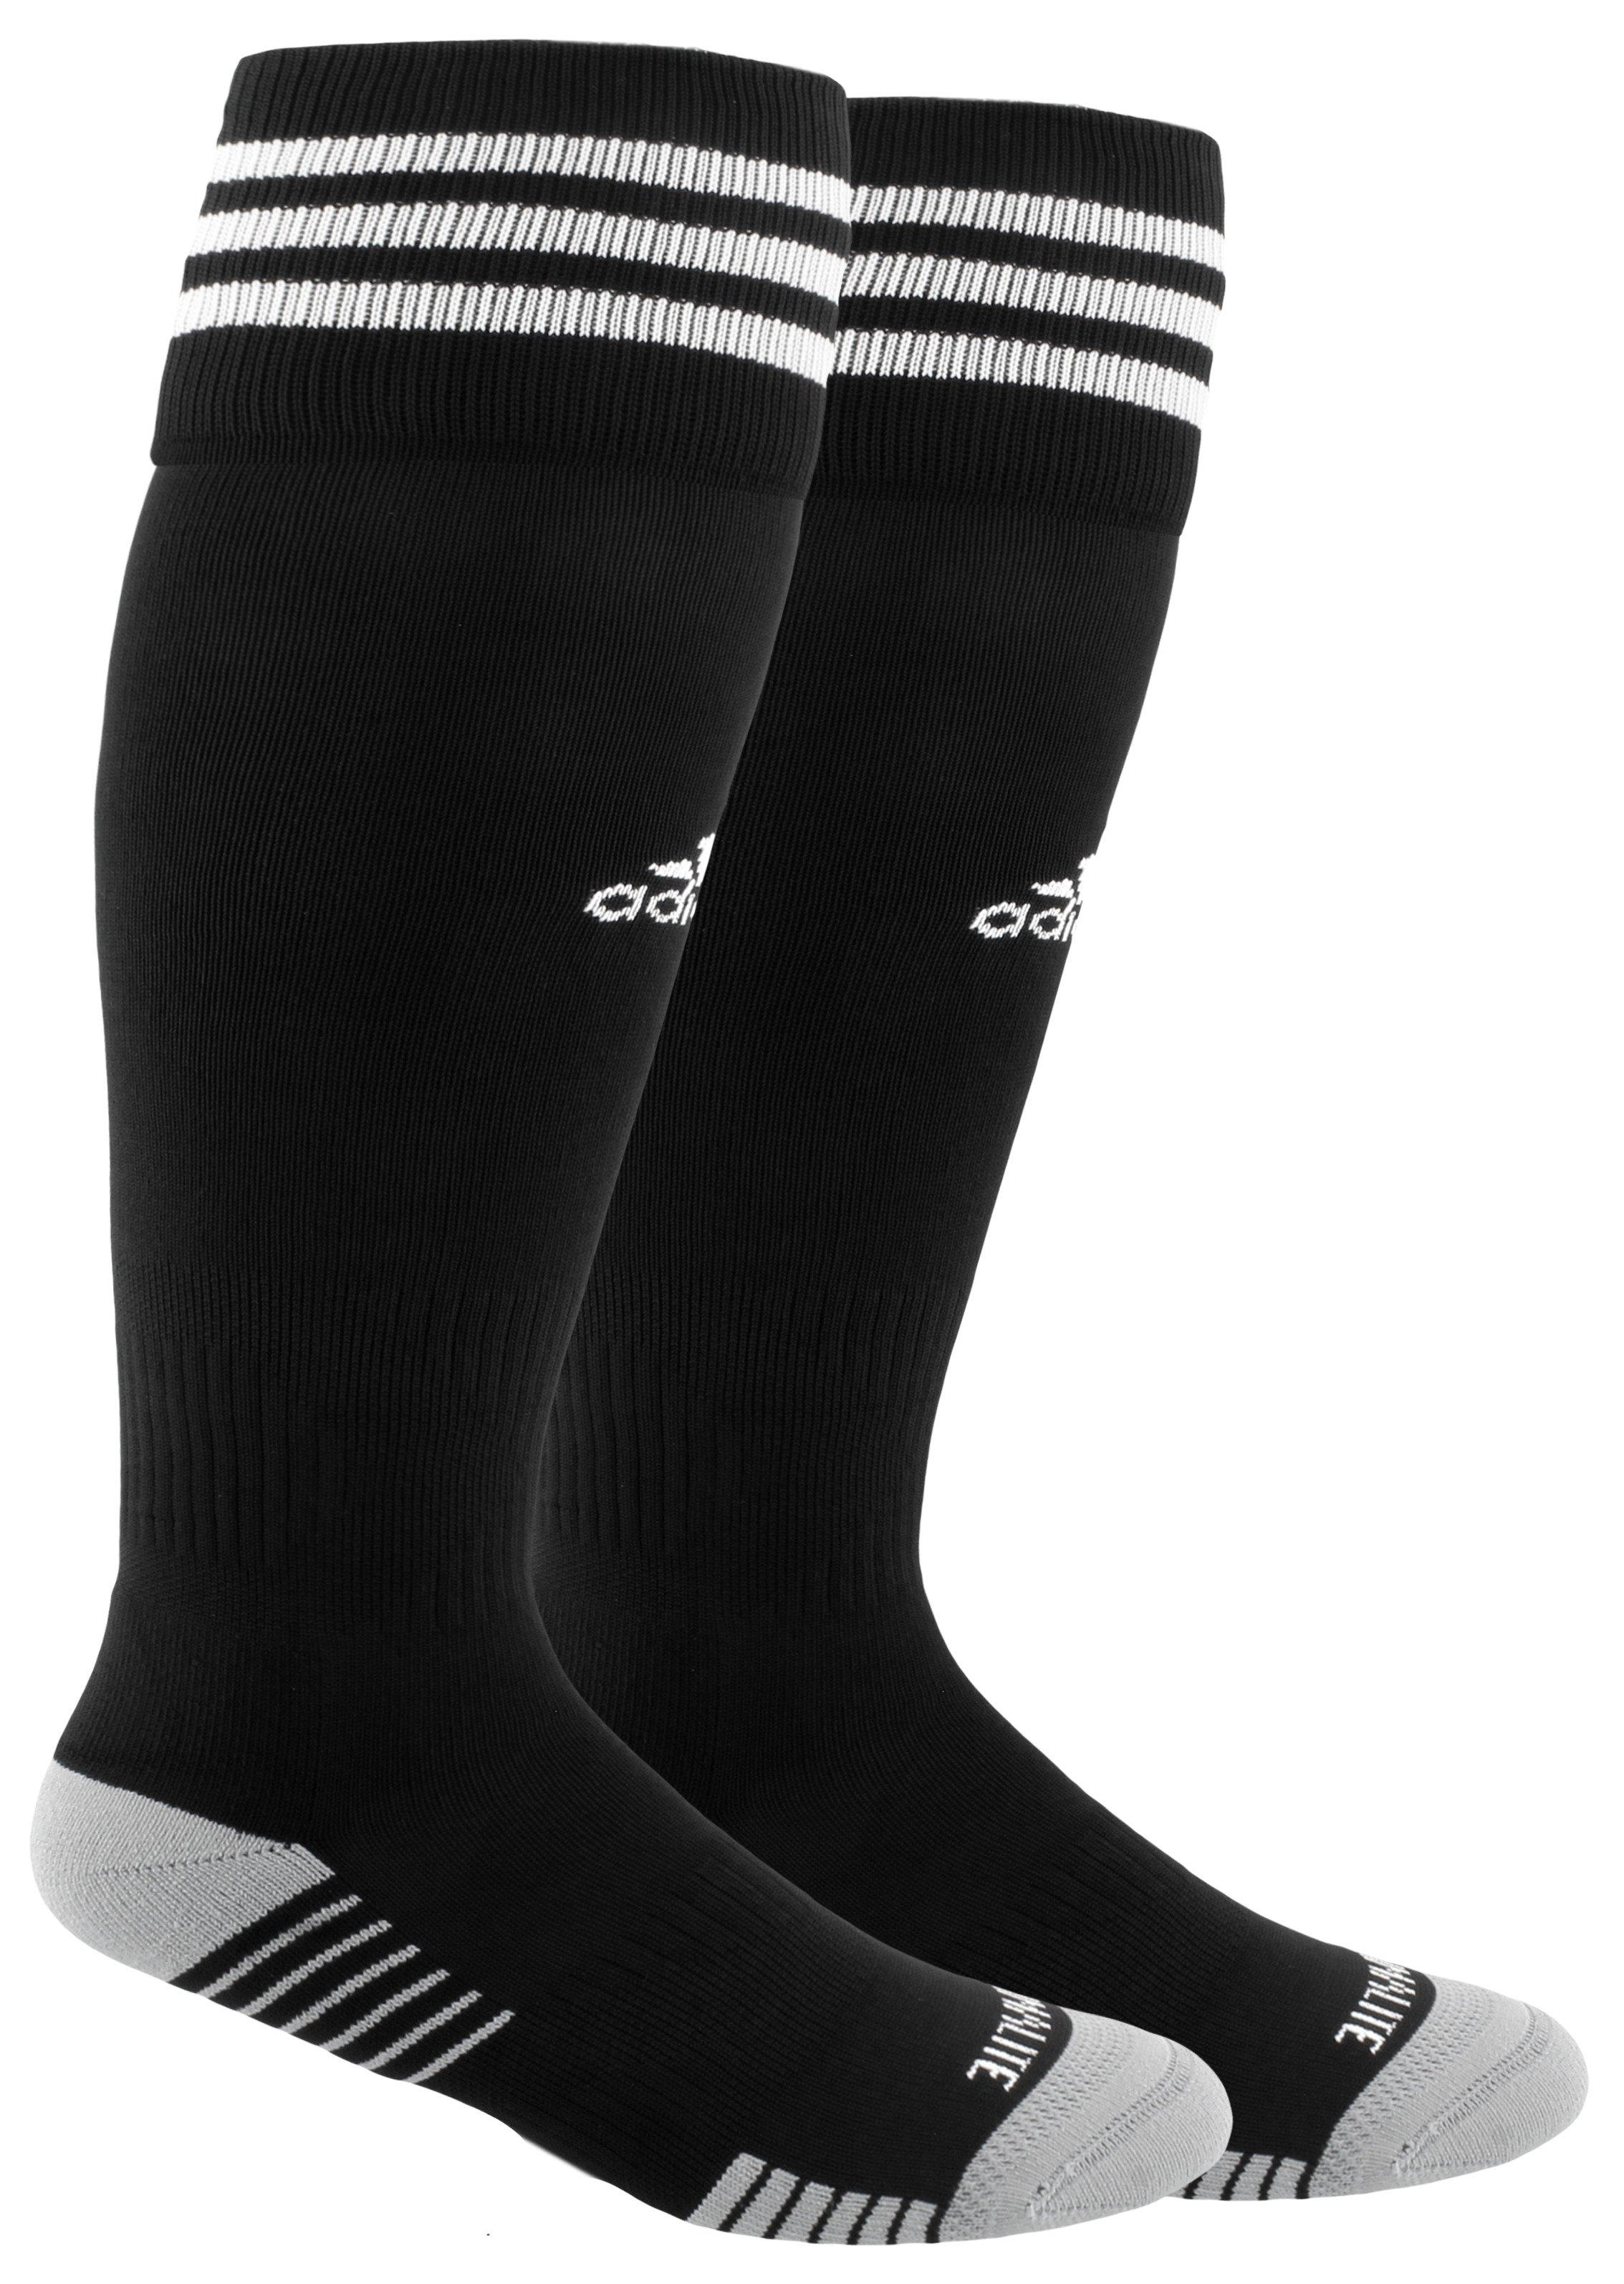 black adidas soccer socks